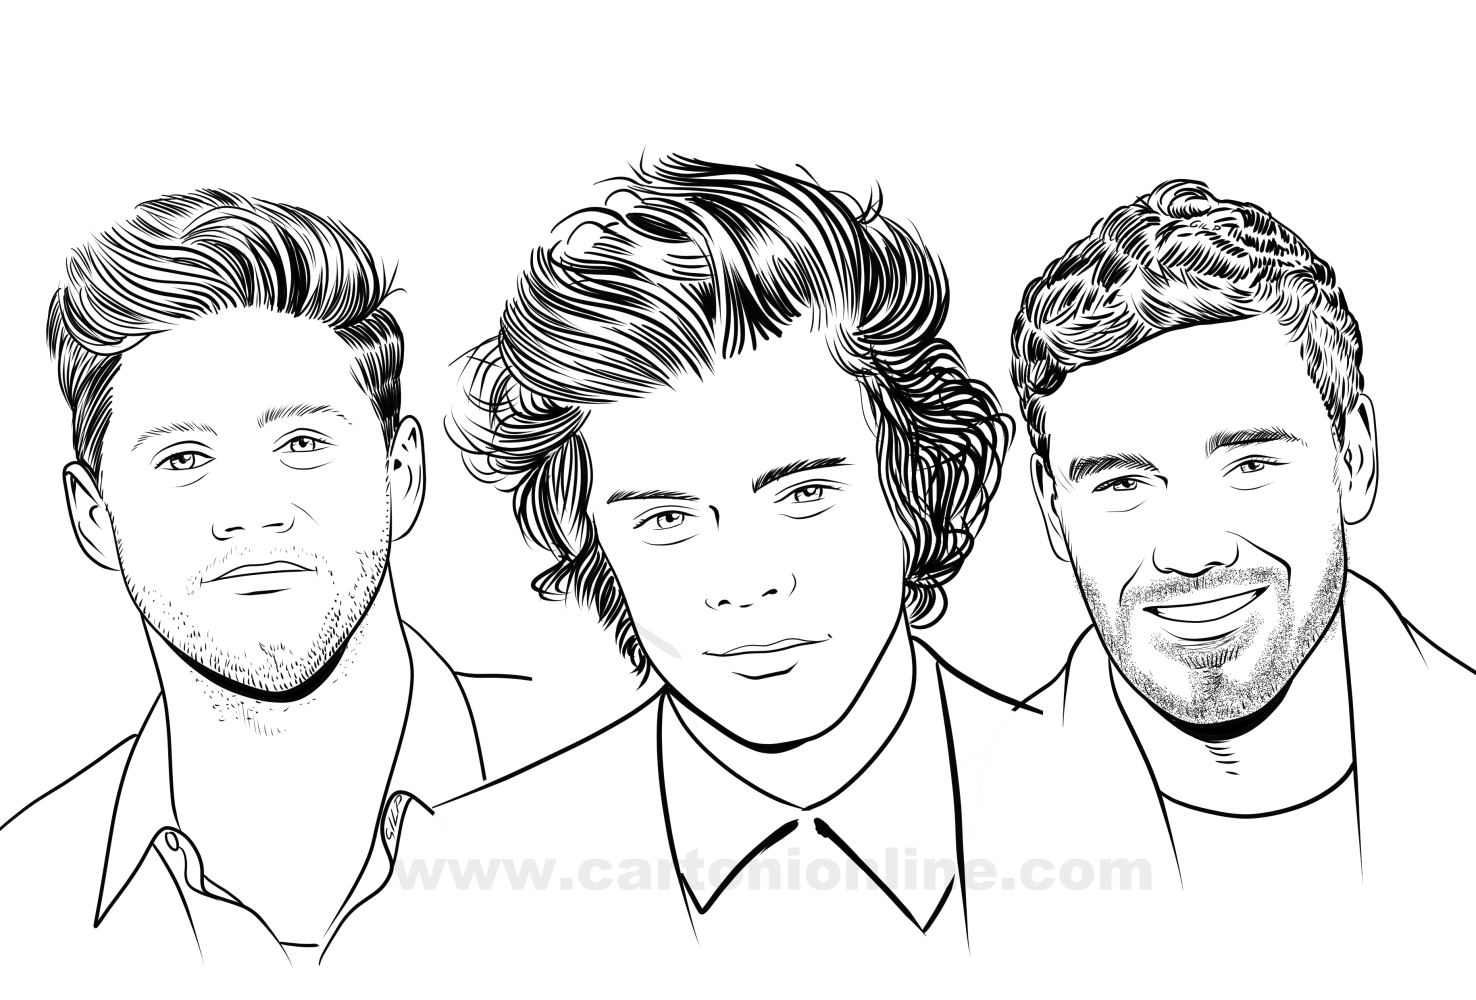 Dibujo de Niall Horan, Harry Styles, Liam Payne de One Direction para imprimir y colorear